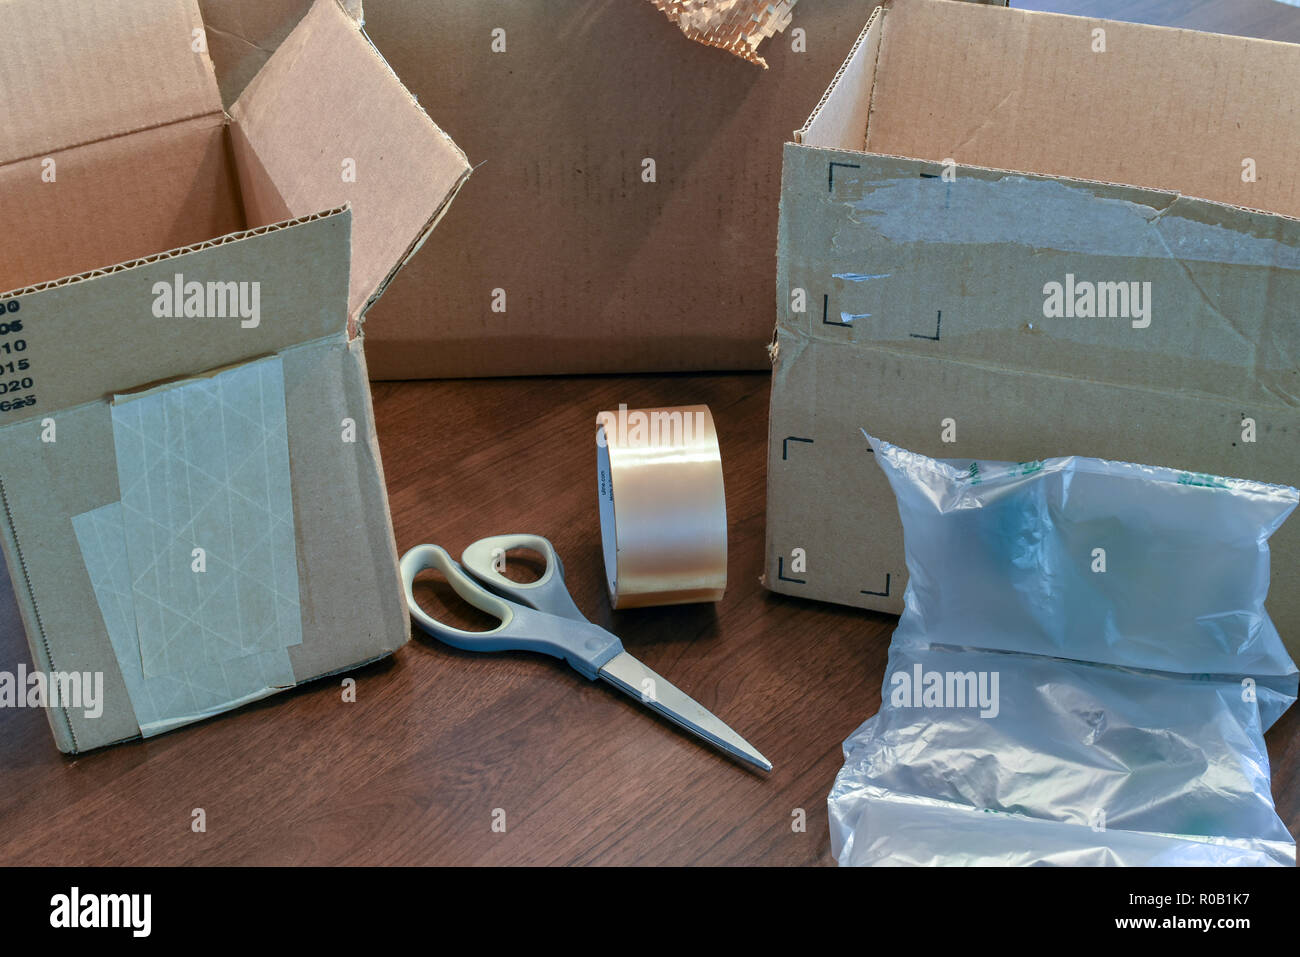 Caja vacía fotografías e imágenes de alta resolución - Alamy